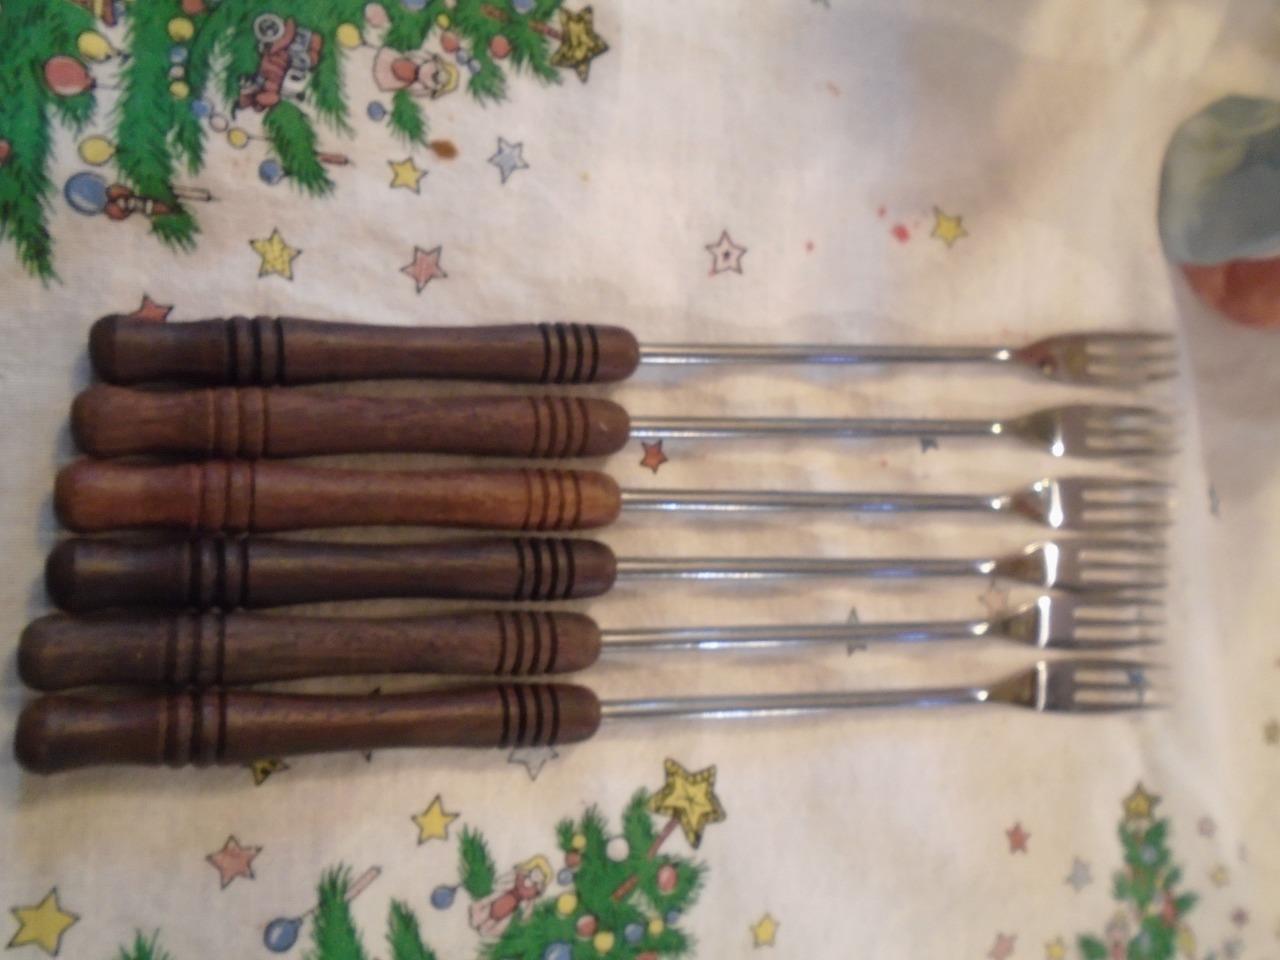 6 Stainless Steel Vintage Fondue Forks Wood Handle Japan in Original Box 10\